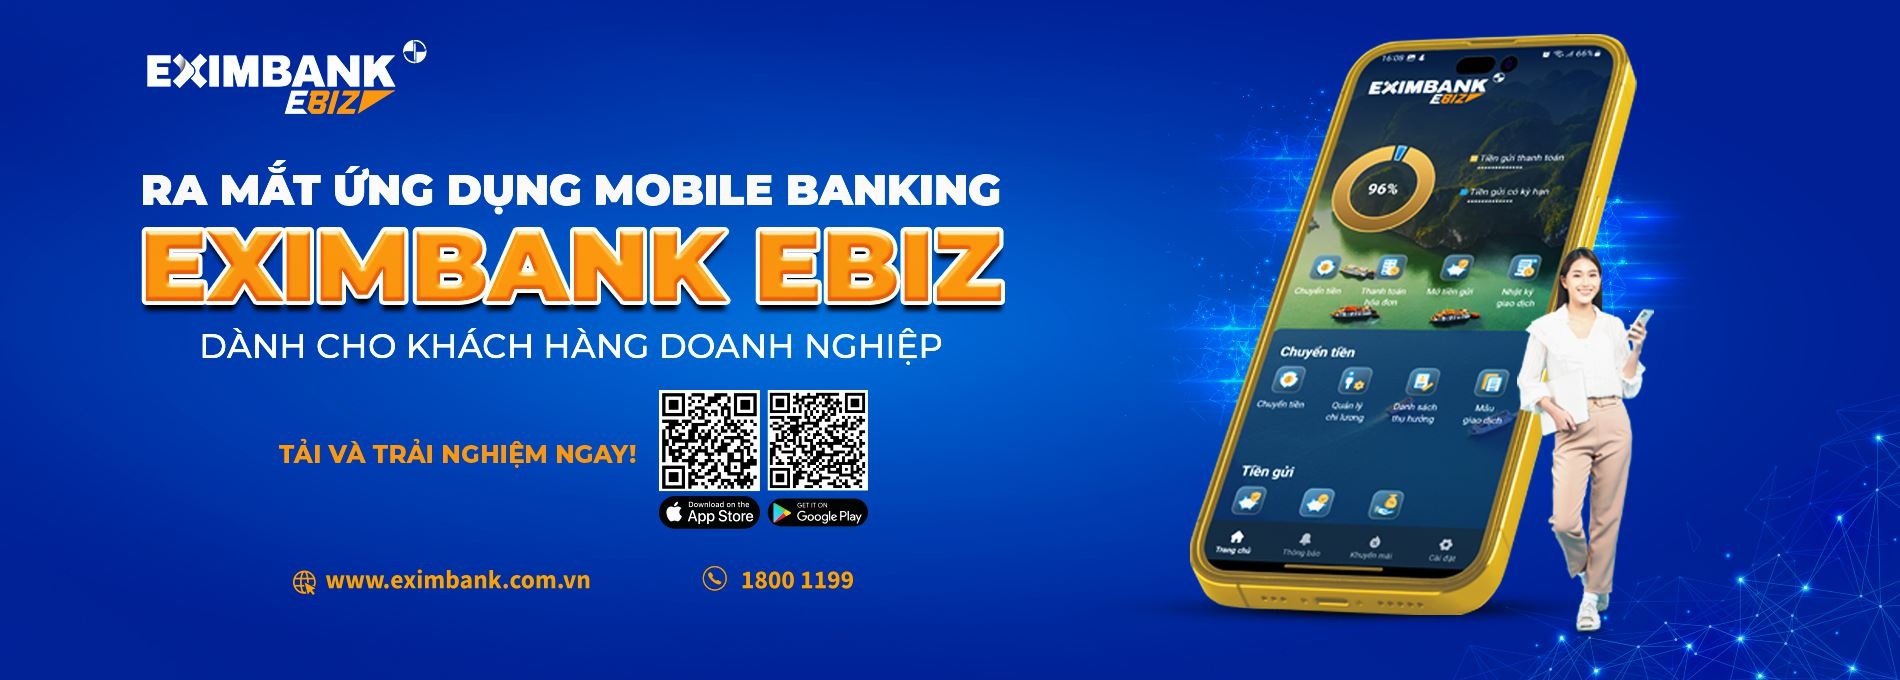 eximbank ra mat ung dung mobile banking eximbank ebiz danh cho doanh nghiep